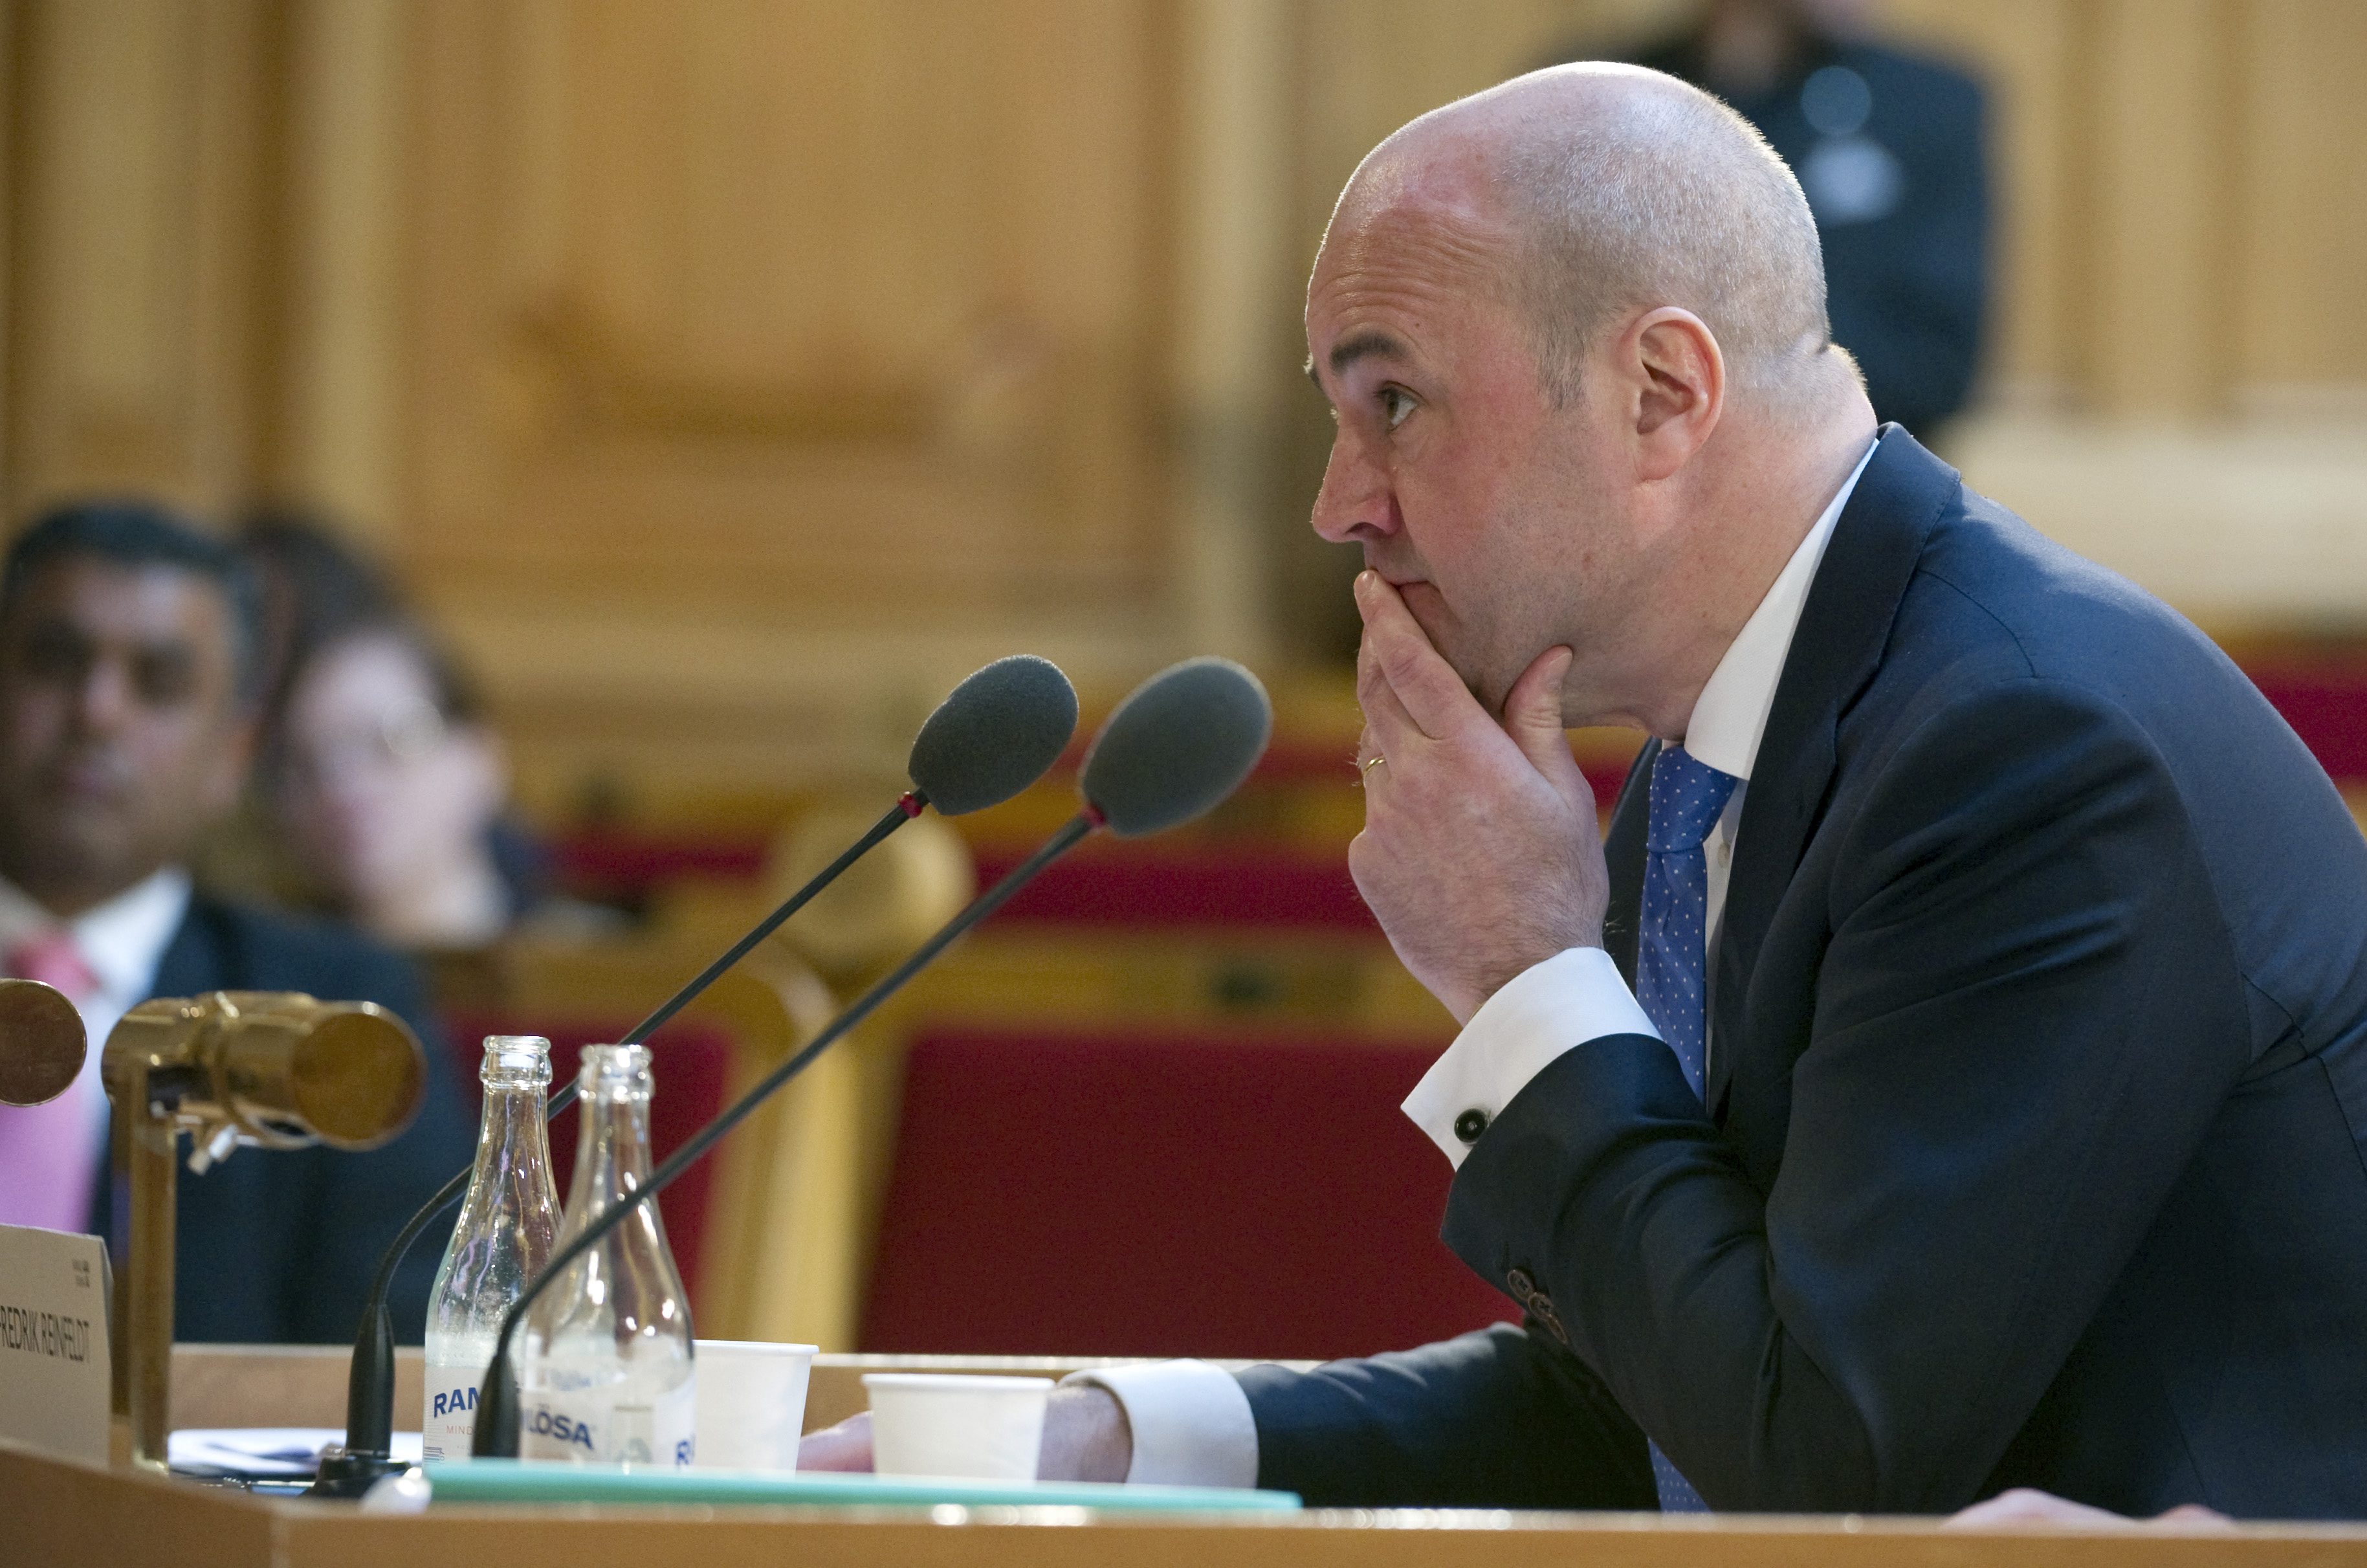 Fredrik Reinfeldt vill inte ge några mer svar om sitt omstridda uttalande.